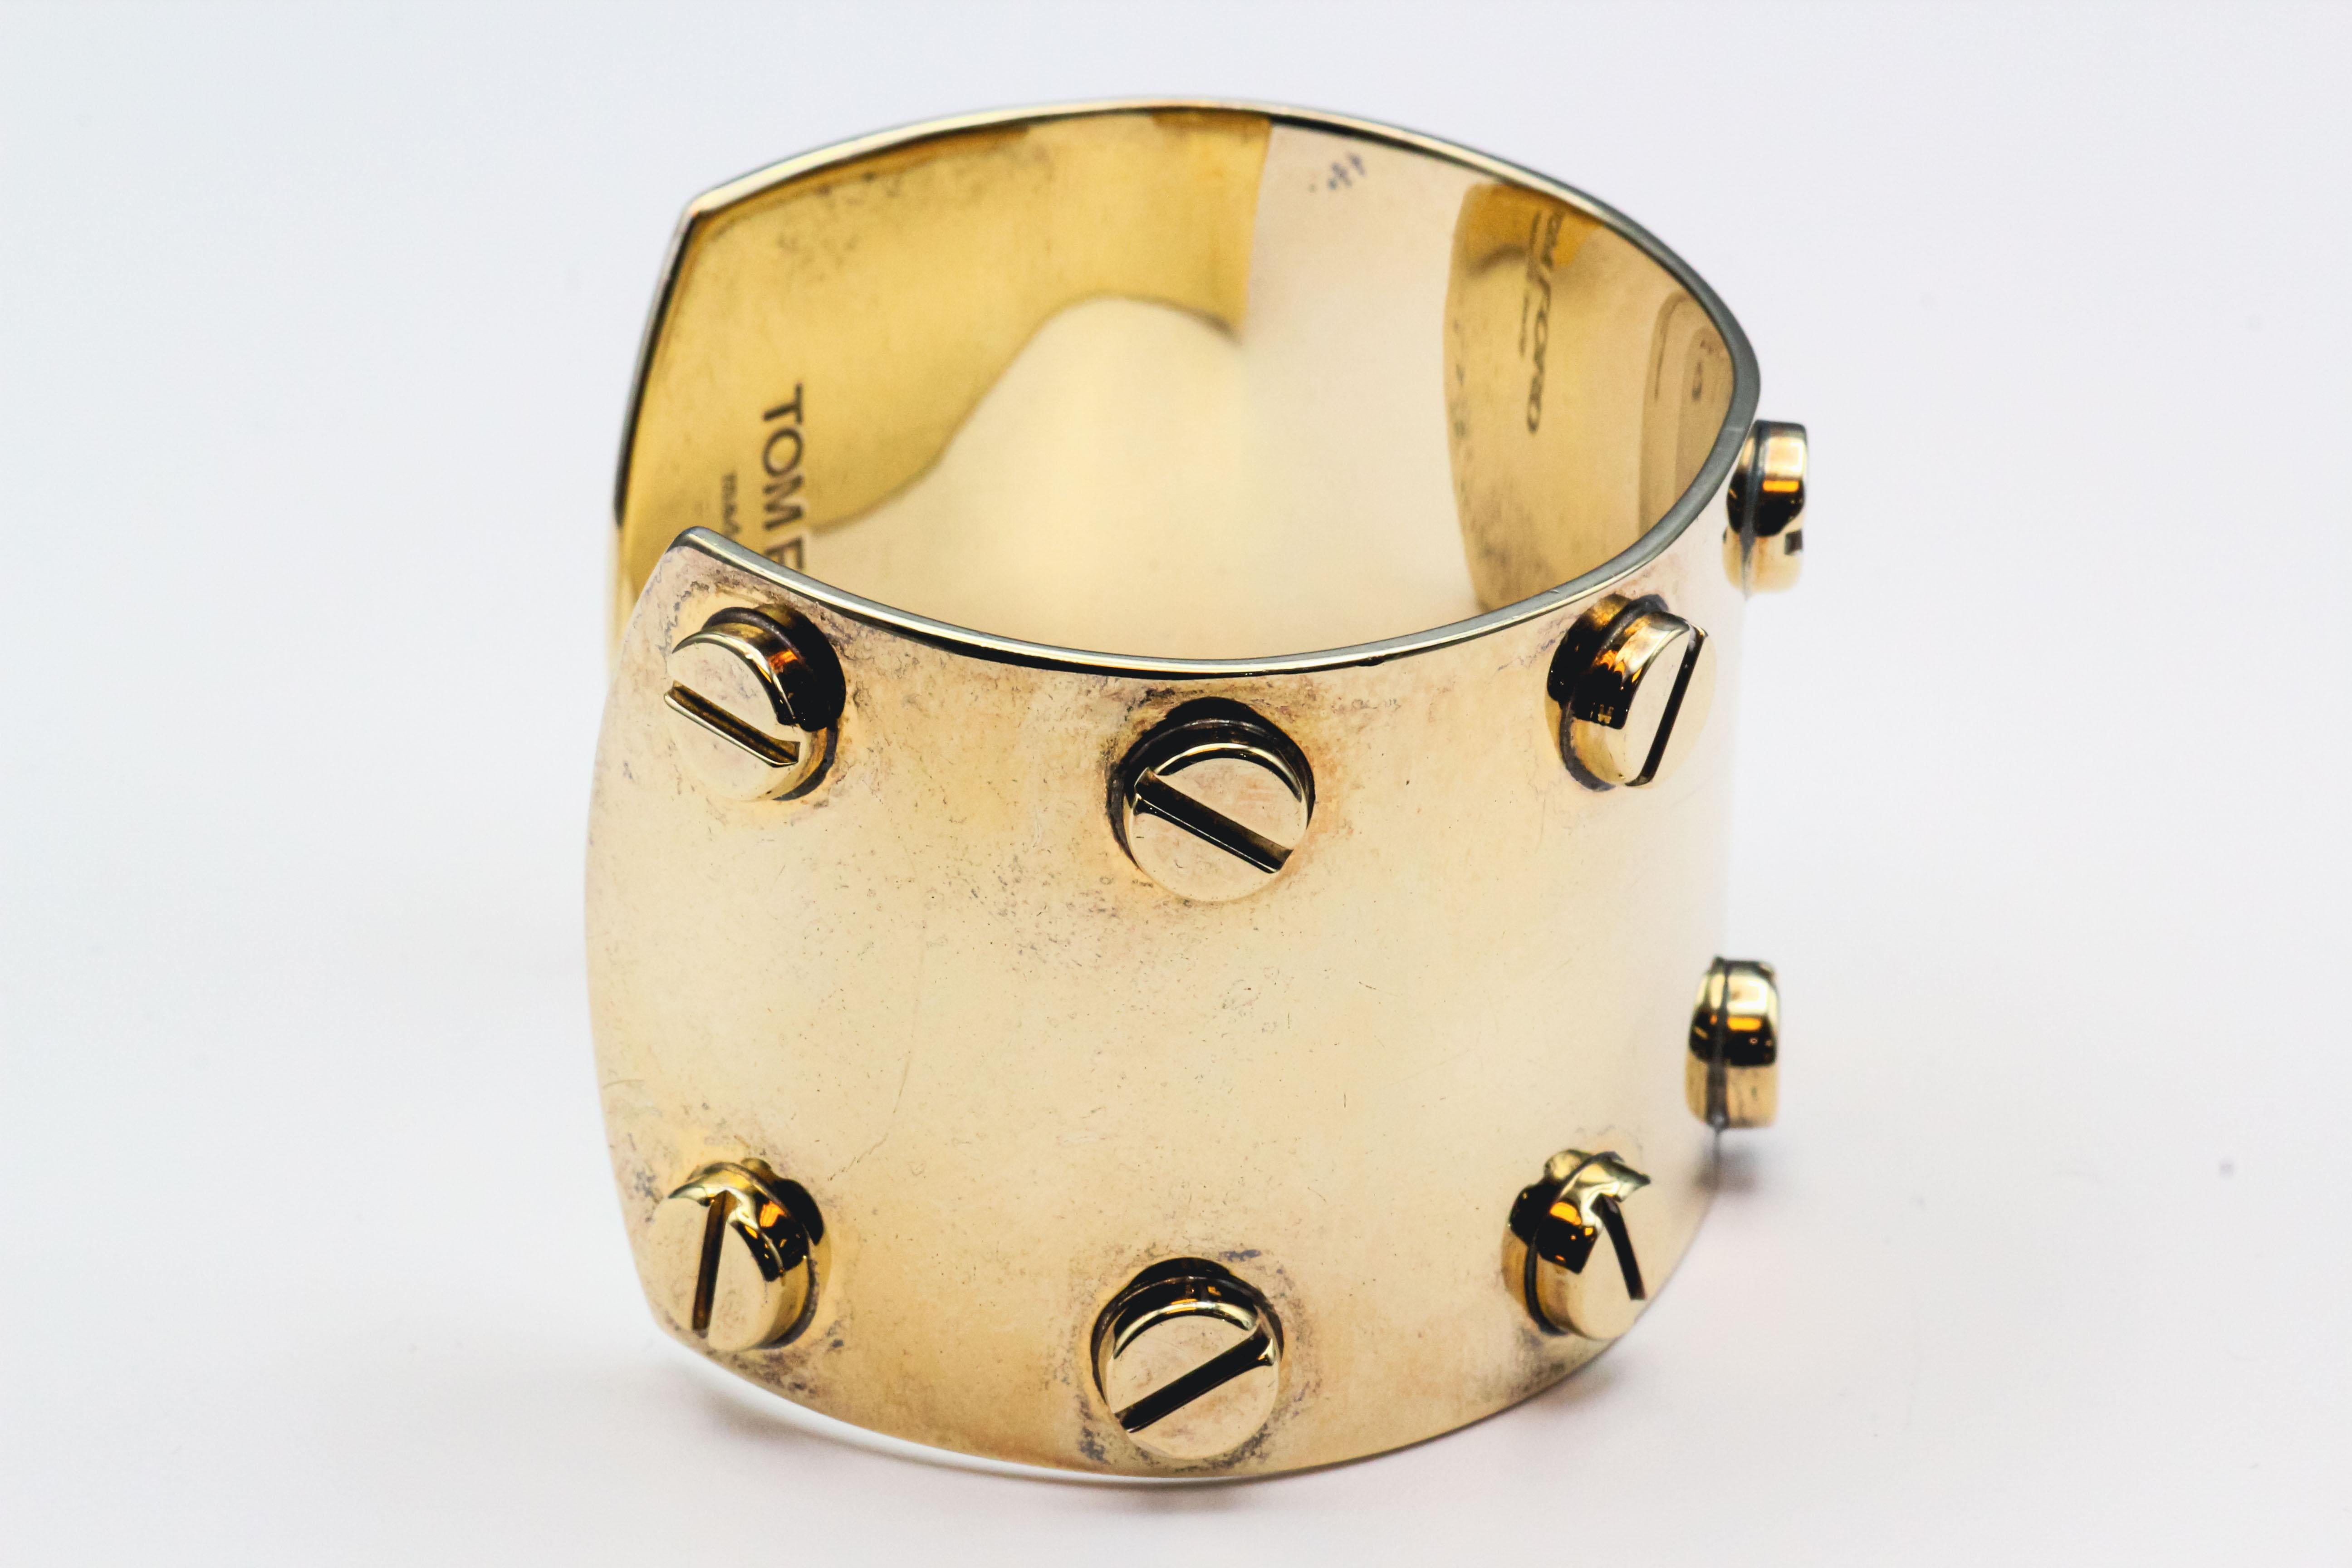 Erhöhen Sie Ihren Stil mit der kühnen und kantigen Eleganz des vergoldeten silbernen Schraubarmbands von Tom Ford. Dieses Design ist ein Statement und strahlt einen Sinn für modernen Luxus und Raffinesse aus.

Das aus hochwertigem Silber gefertigte